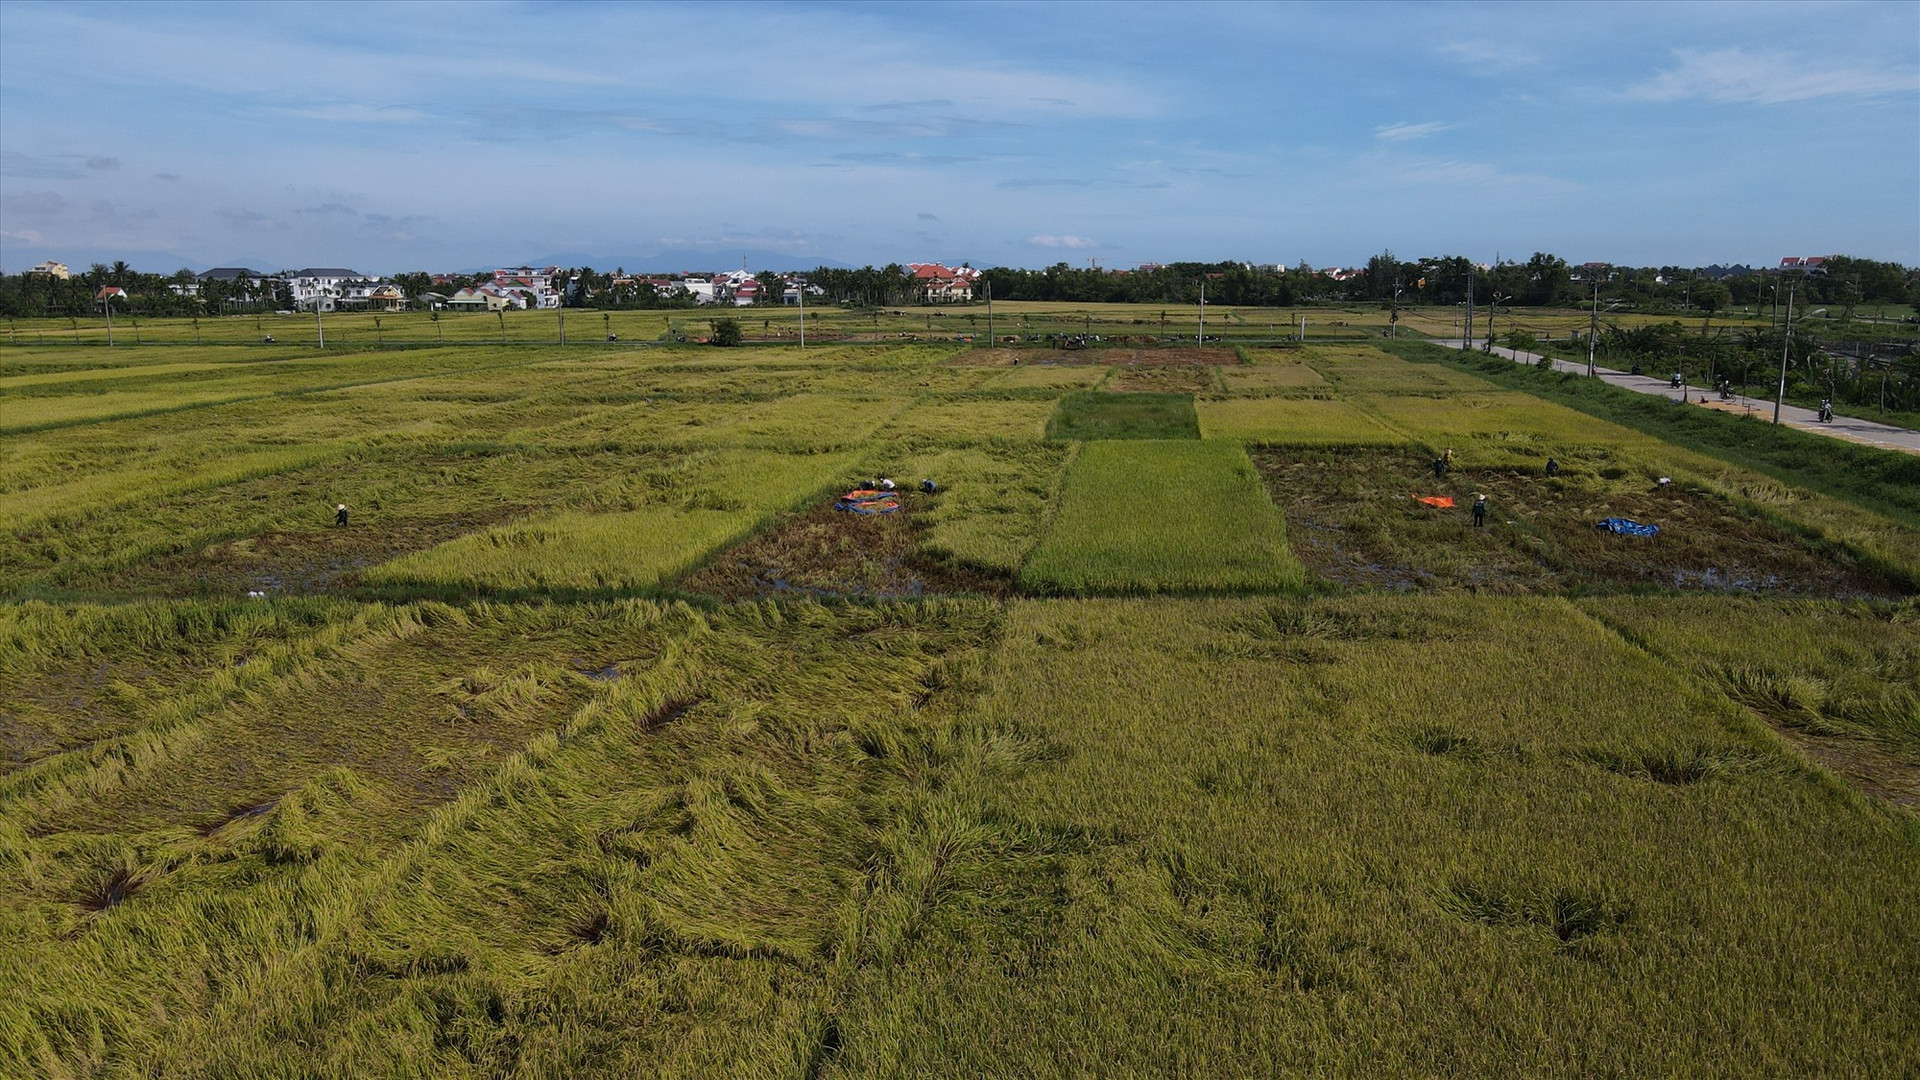 Hàng chục ha lúa của người dân tại cánh đồng Mẫu (xã Cẩm Thanh, Hội An) bị ngã đổ và bắt đầu lên mầm non sau những ngày ngâm nước do mưa lũ.